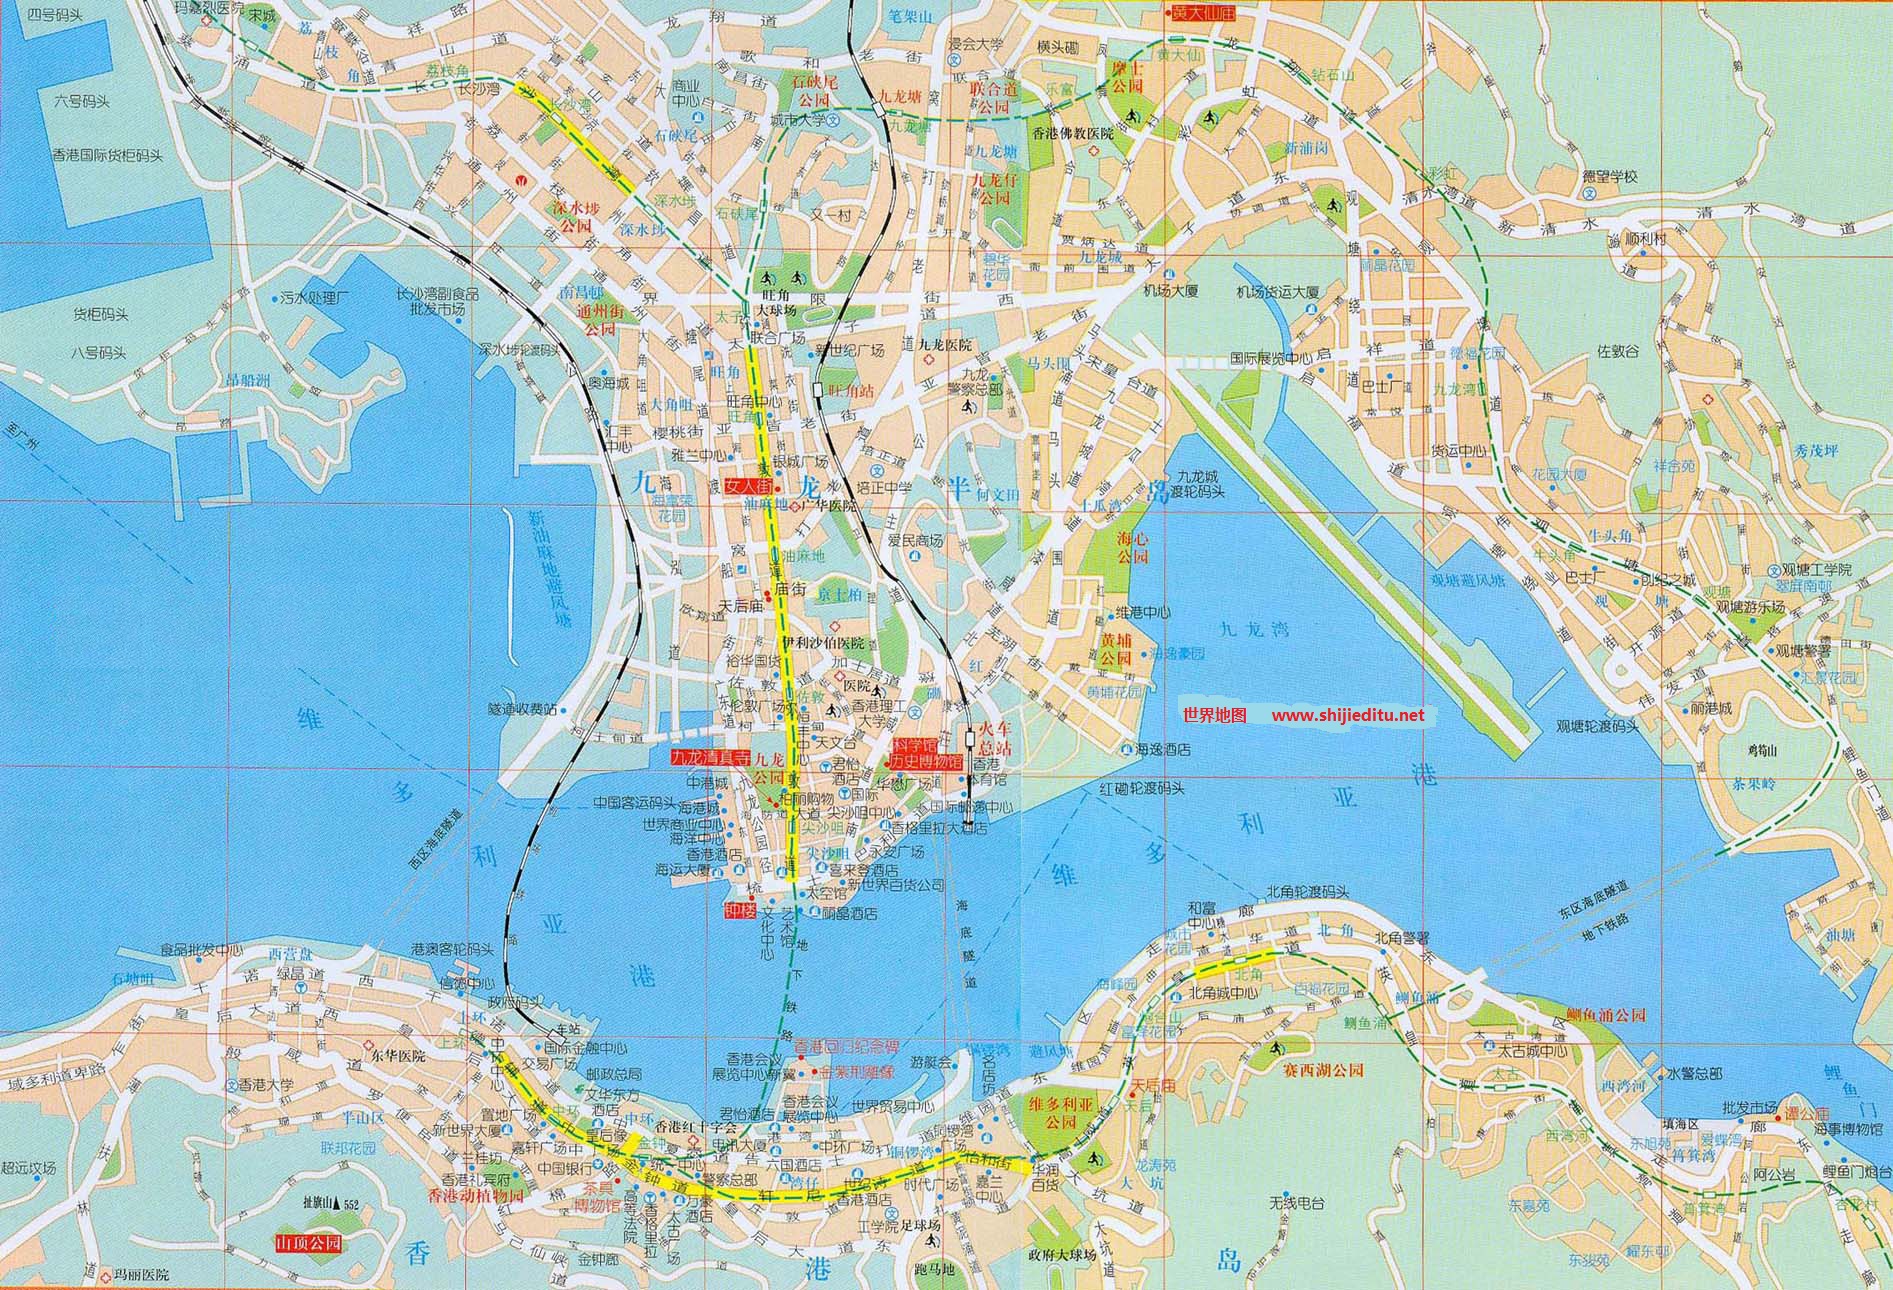 香港邻近地区地图高清版 - 香港地图 - 地理教师网